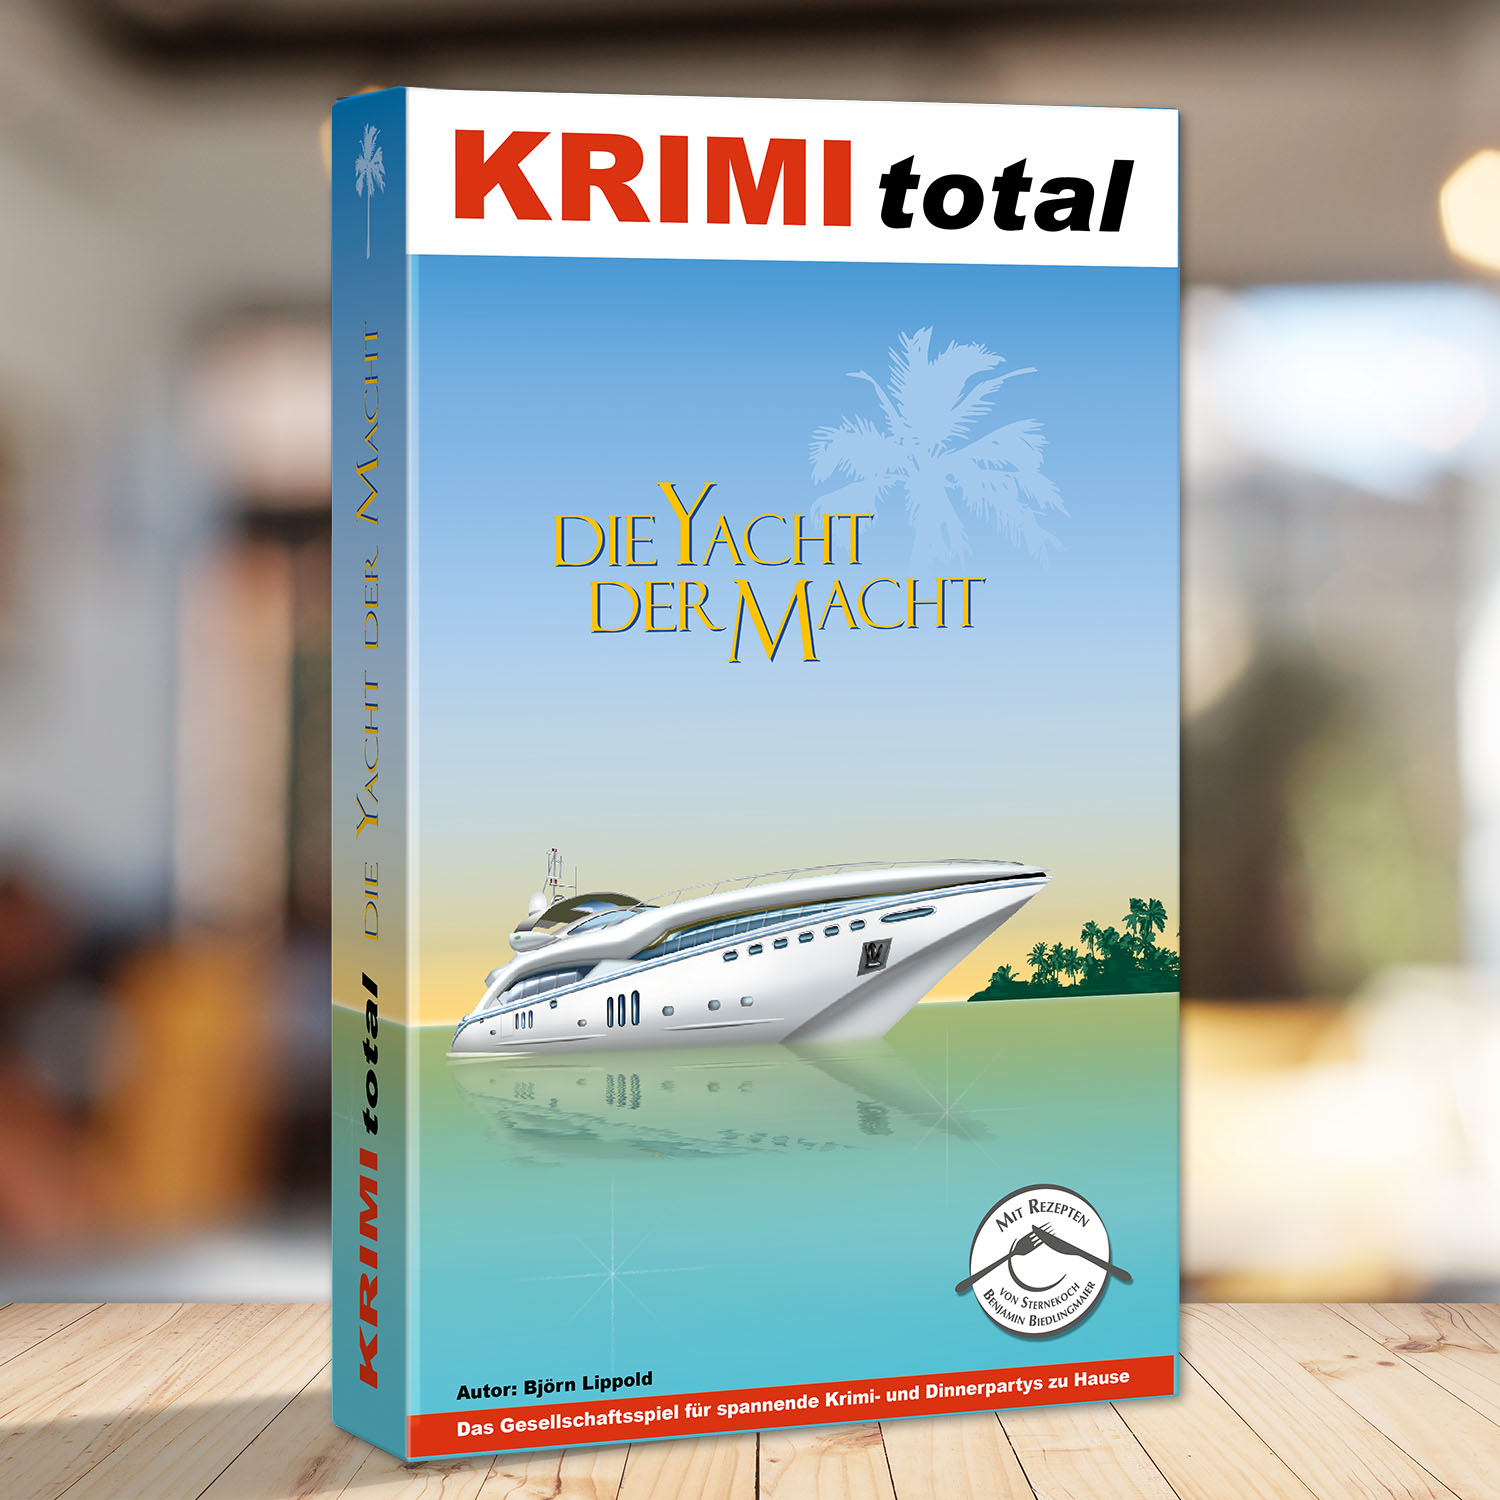 Abbildung eines Spielkartons des Krimispiels "KRIMI total - Die Yacht der Macht"